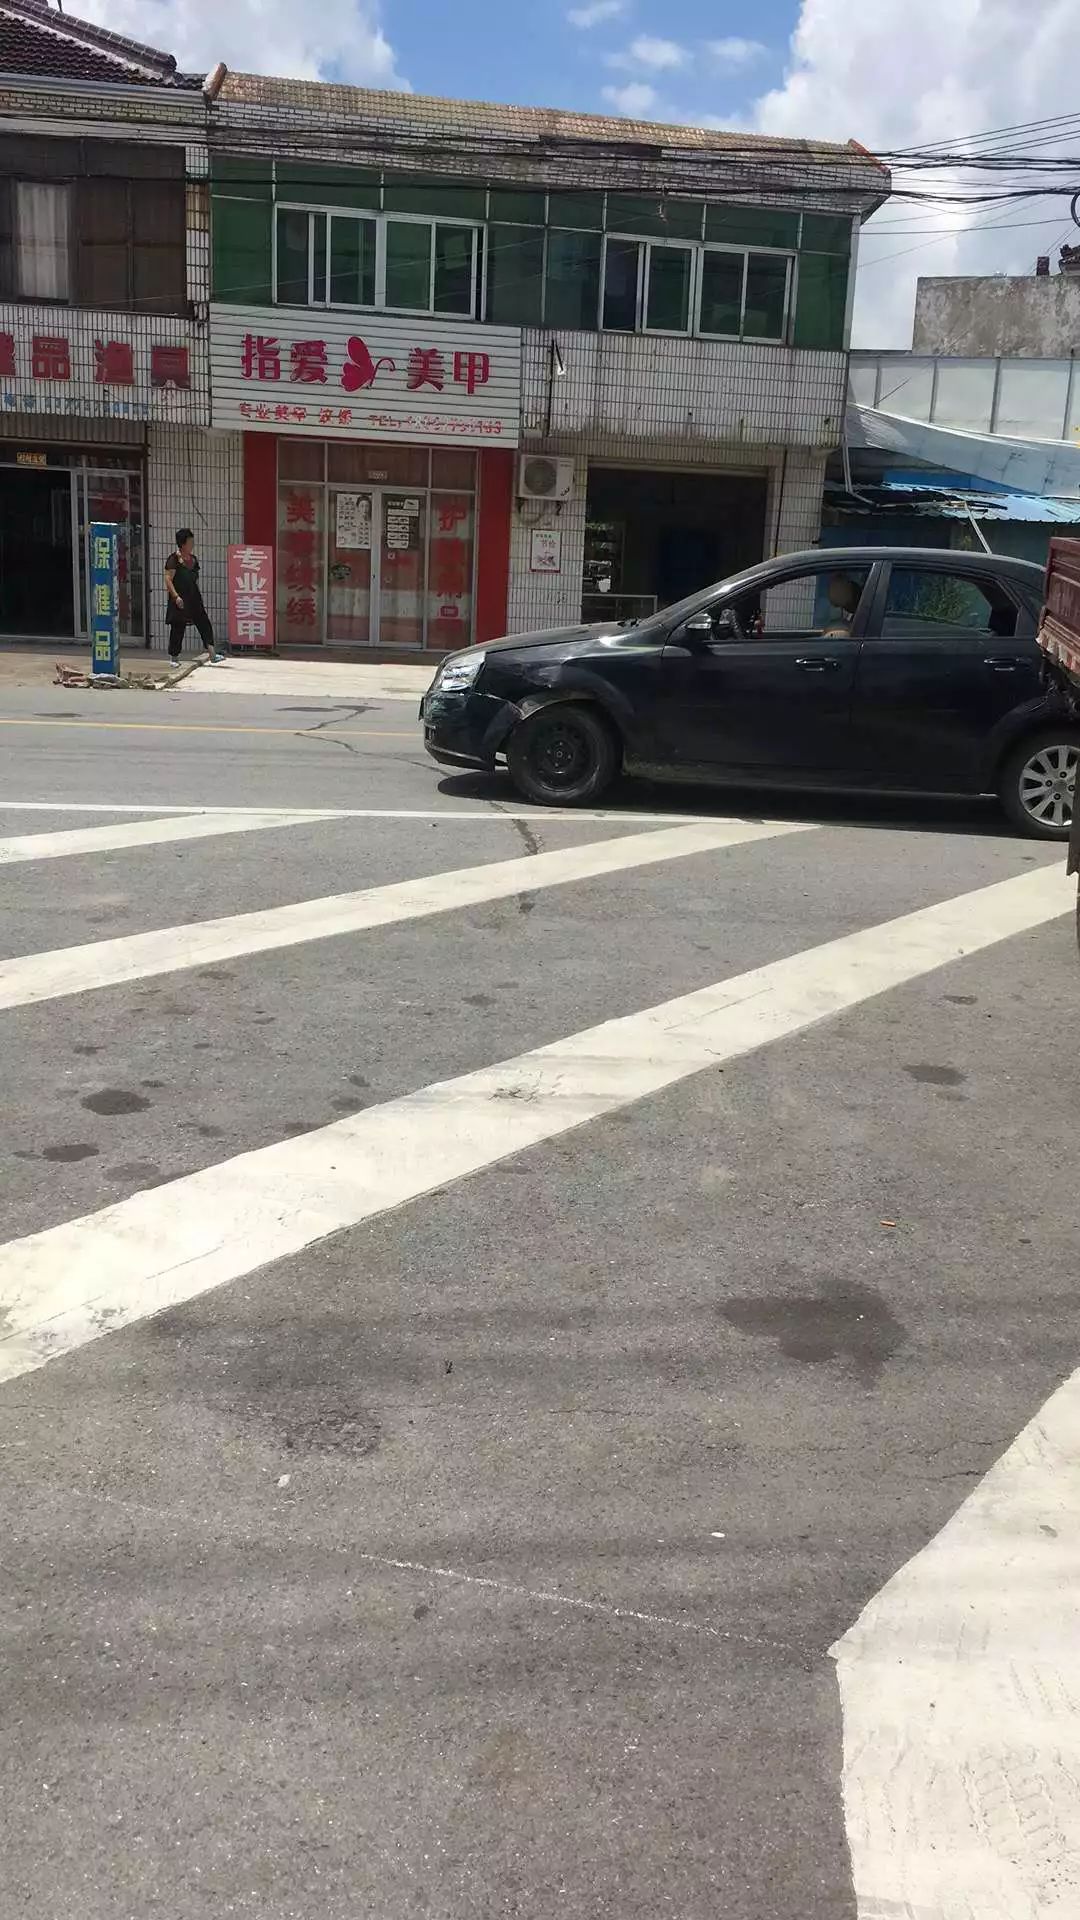 【第一现场】昨日中午靖海十字路口再发车祸,轿车跟电瓶车相撞